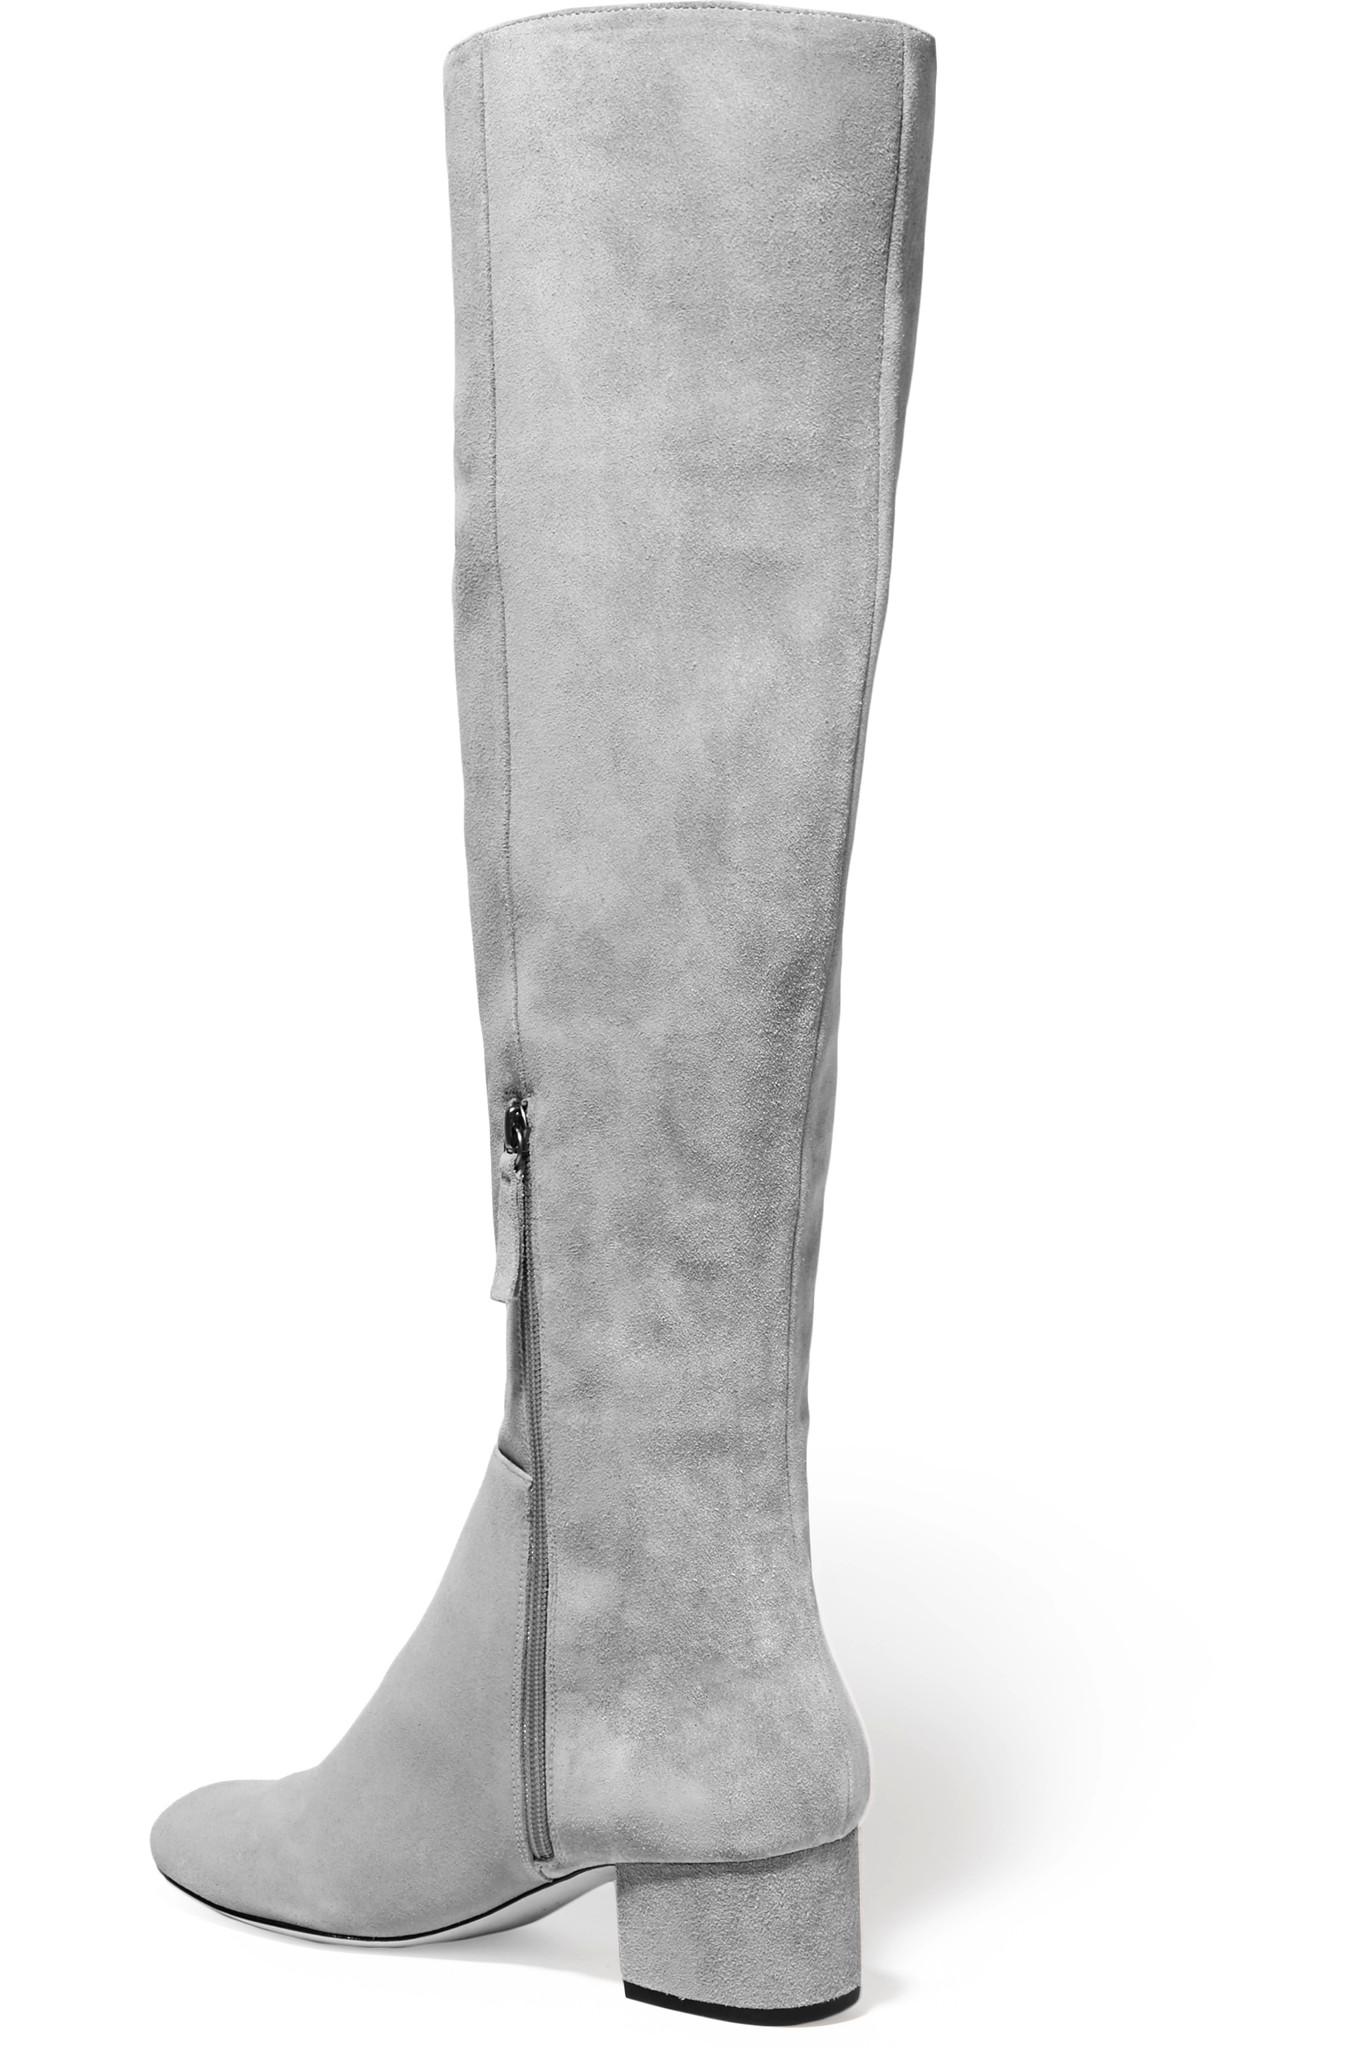 light gray knee high boots